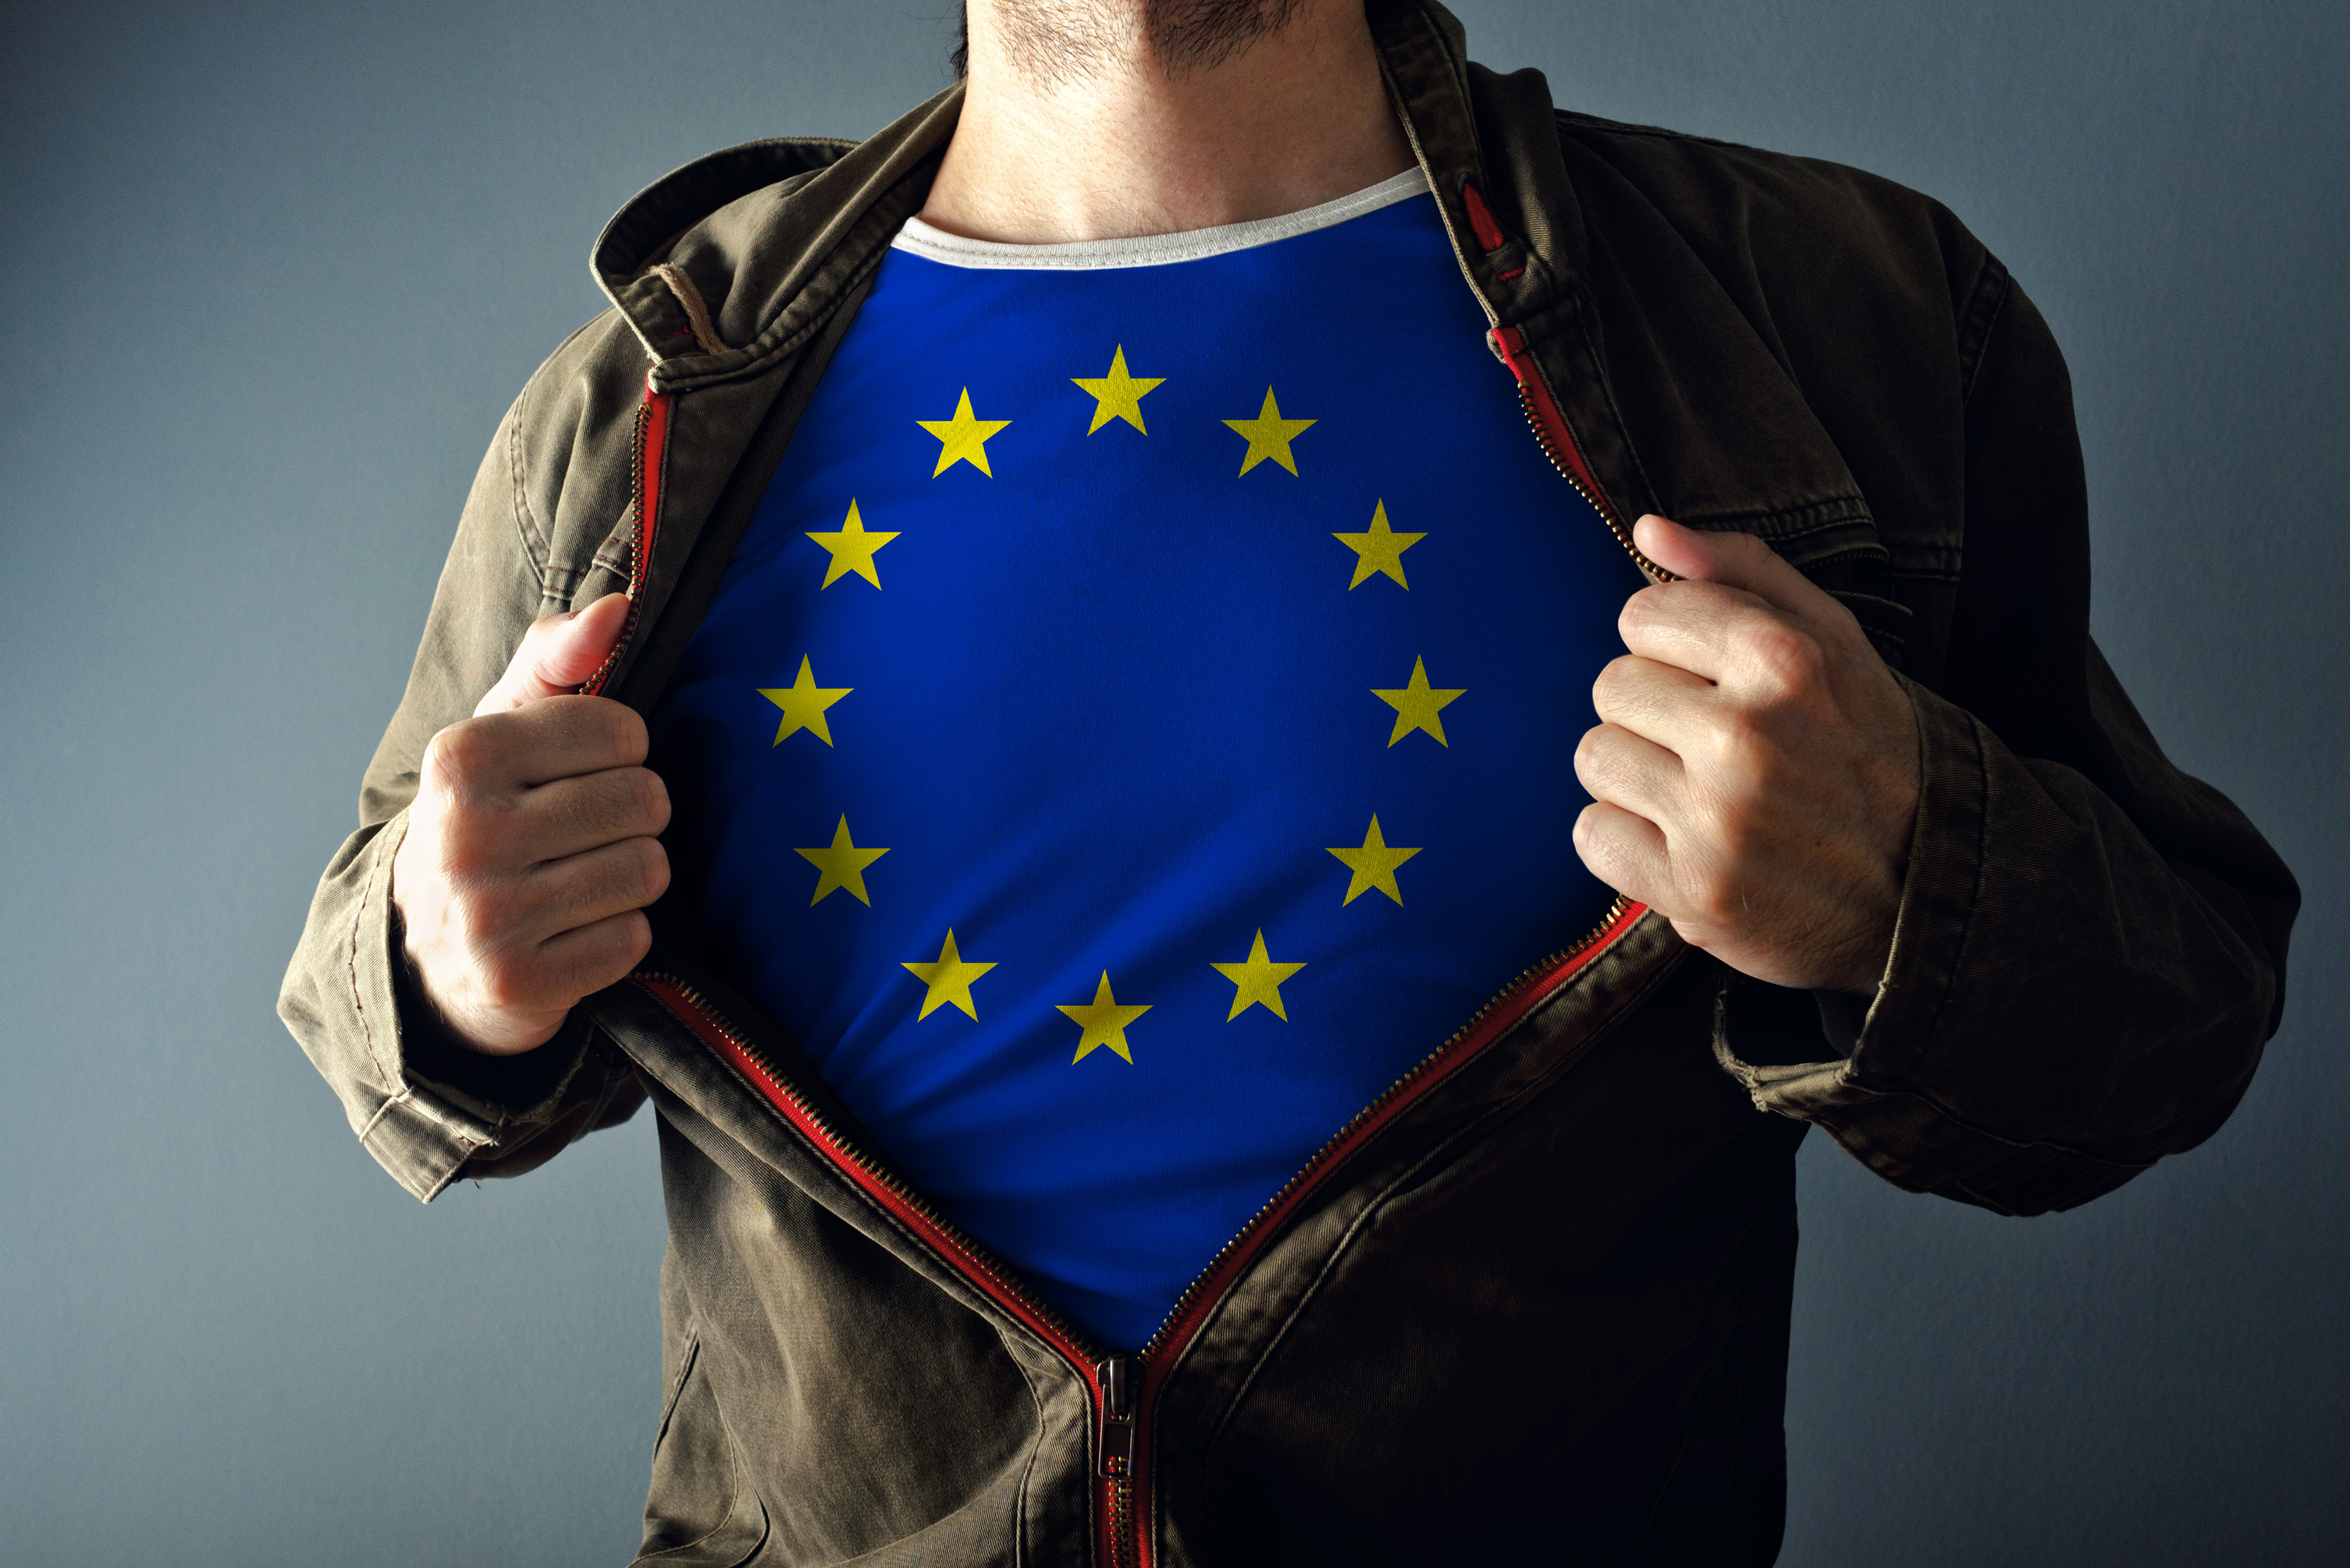 Erasmus+: un successo anche nel 2020 malgrado le restrizioni